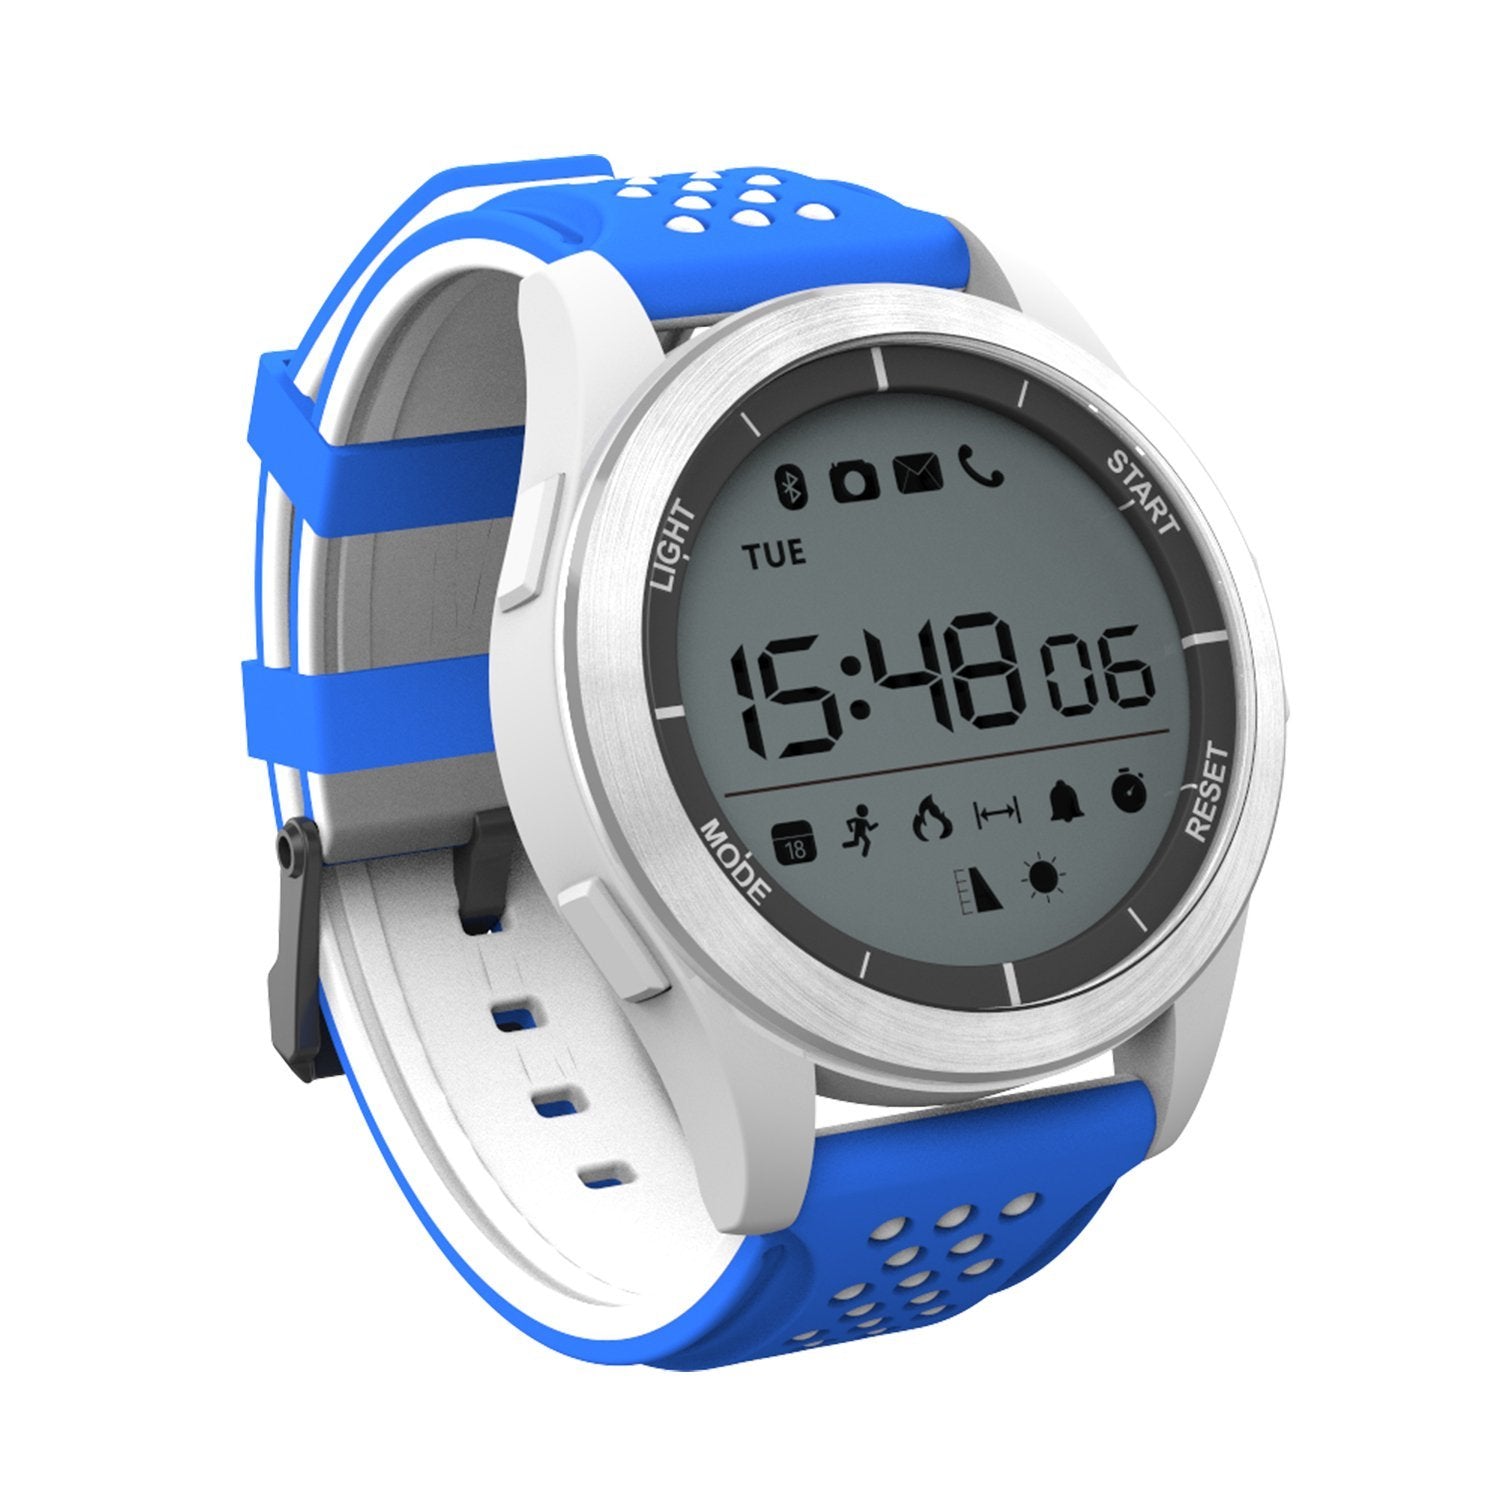 F3 Bracelet IP68 waterproof Smart Watch